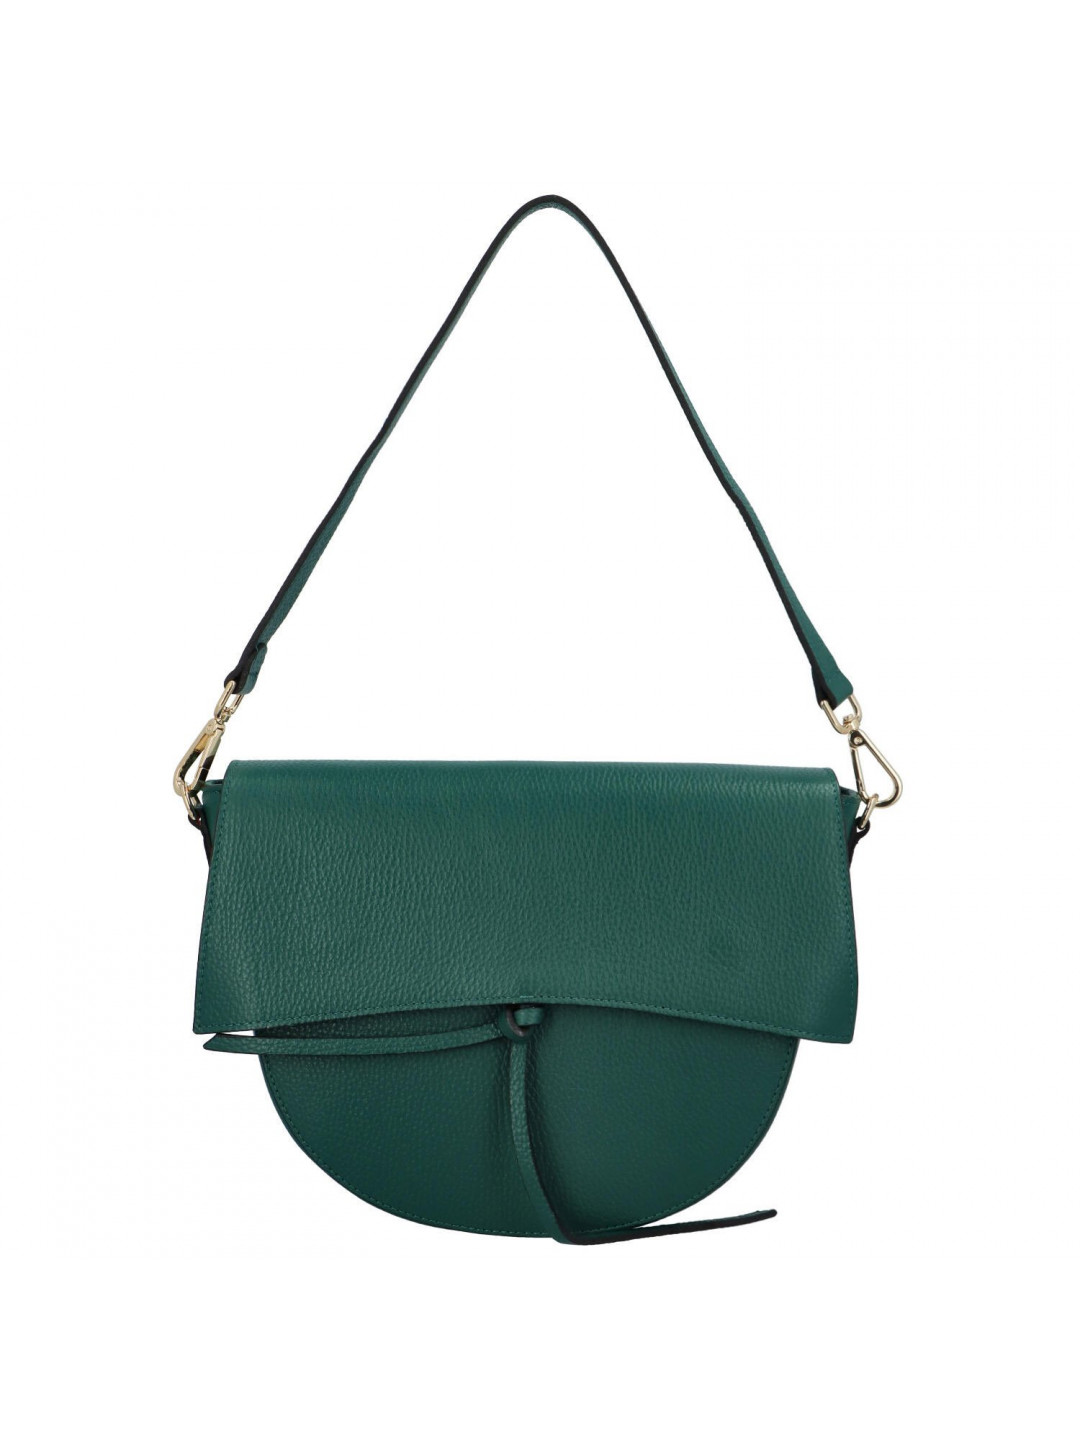 Dámská luxusní kožená malá kabelka Chiara tmavě zelená